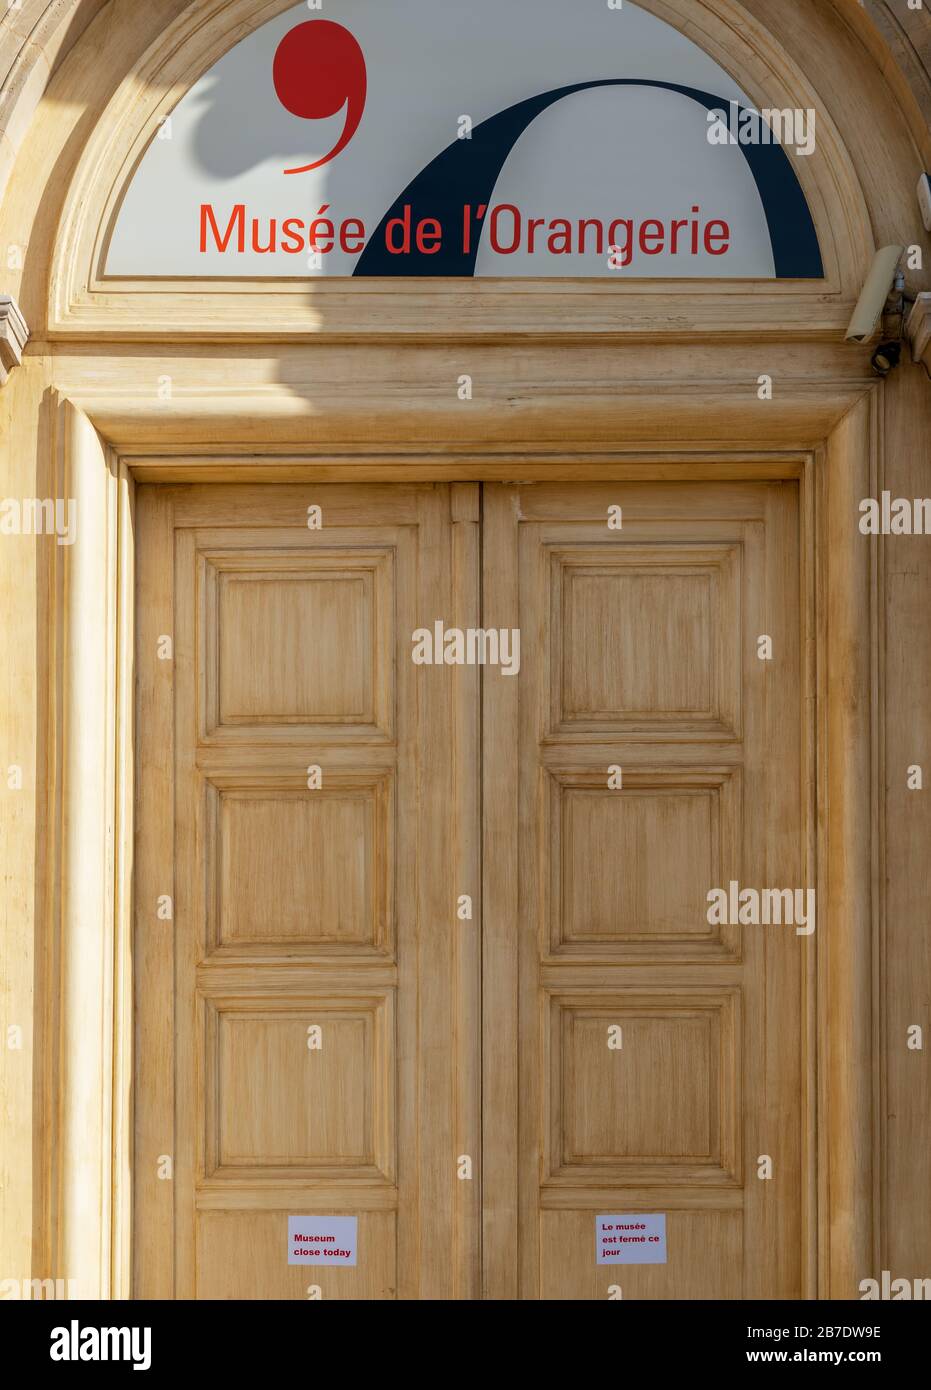 Musee de l'Orangerie in Paris wegen Coronavirus geschlossen Stockfoto